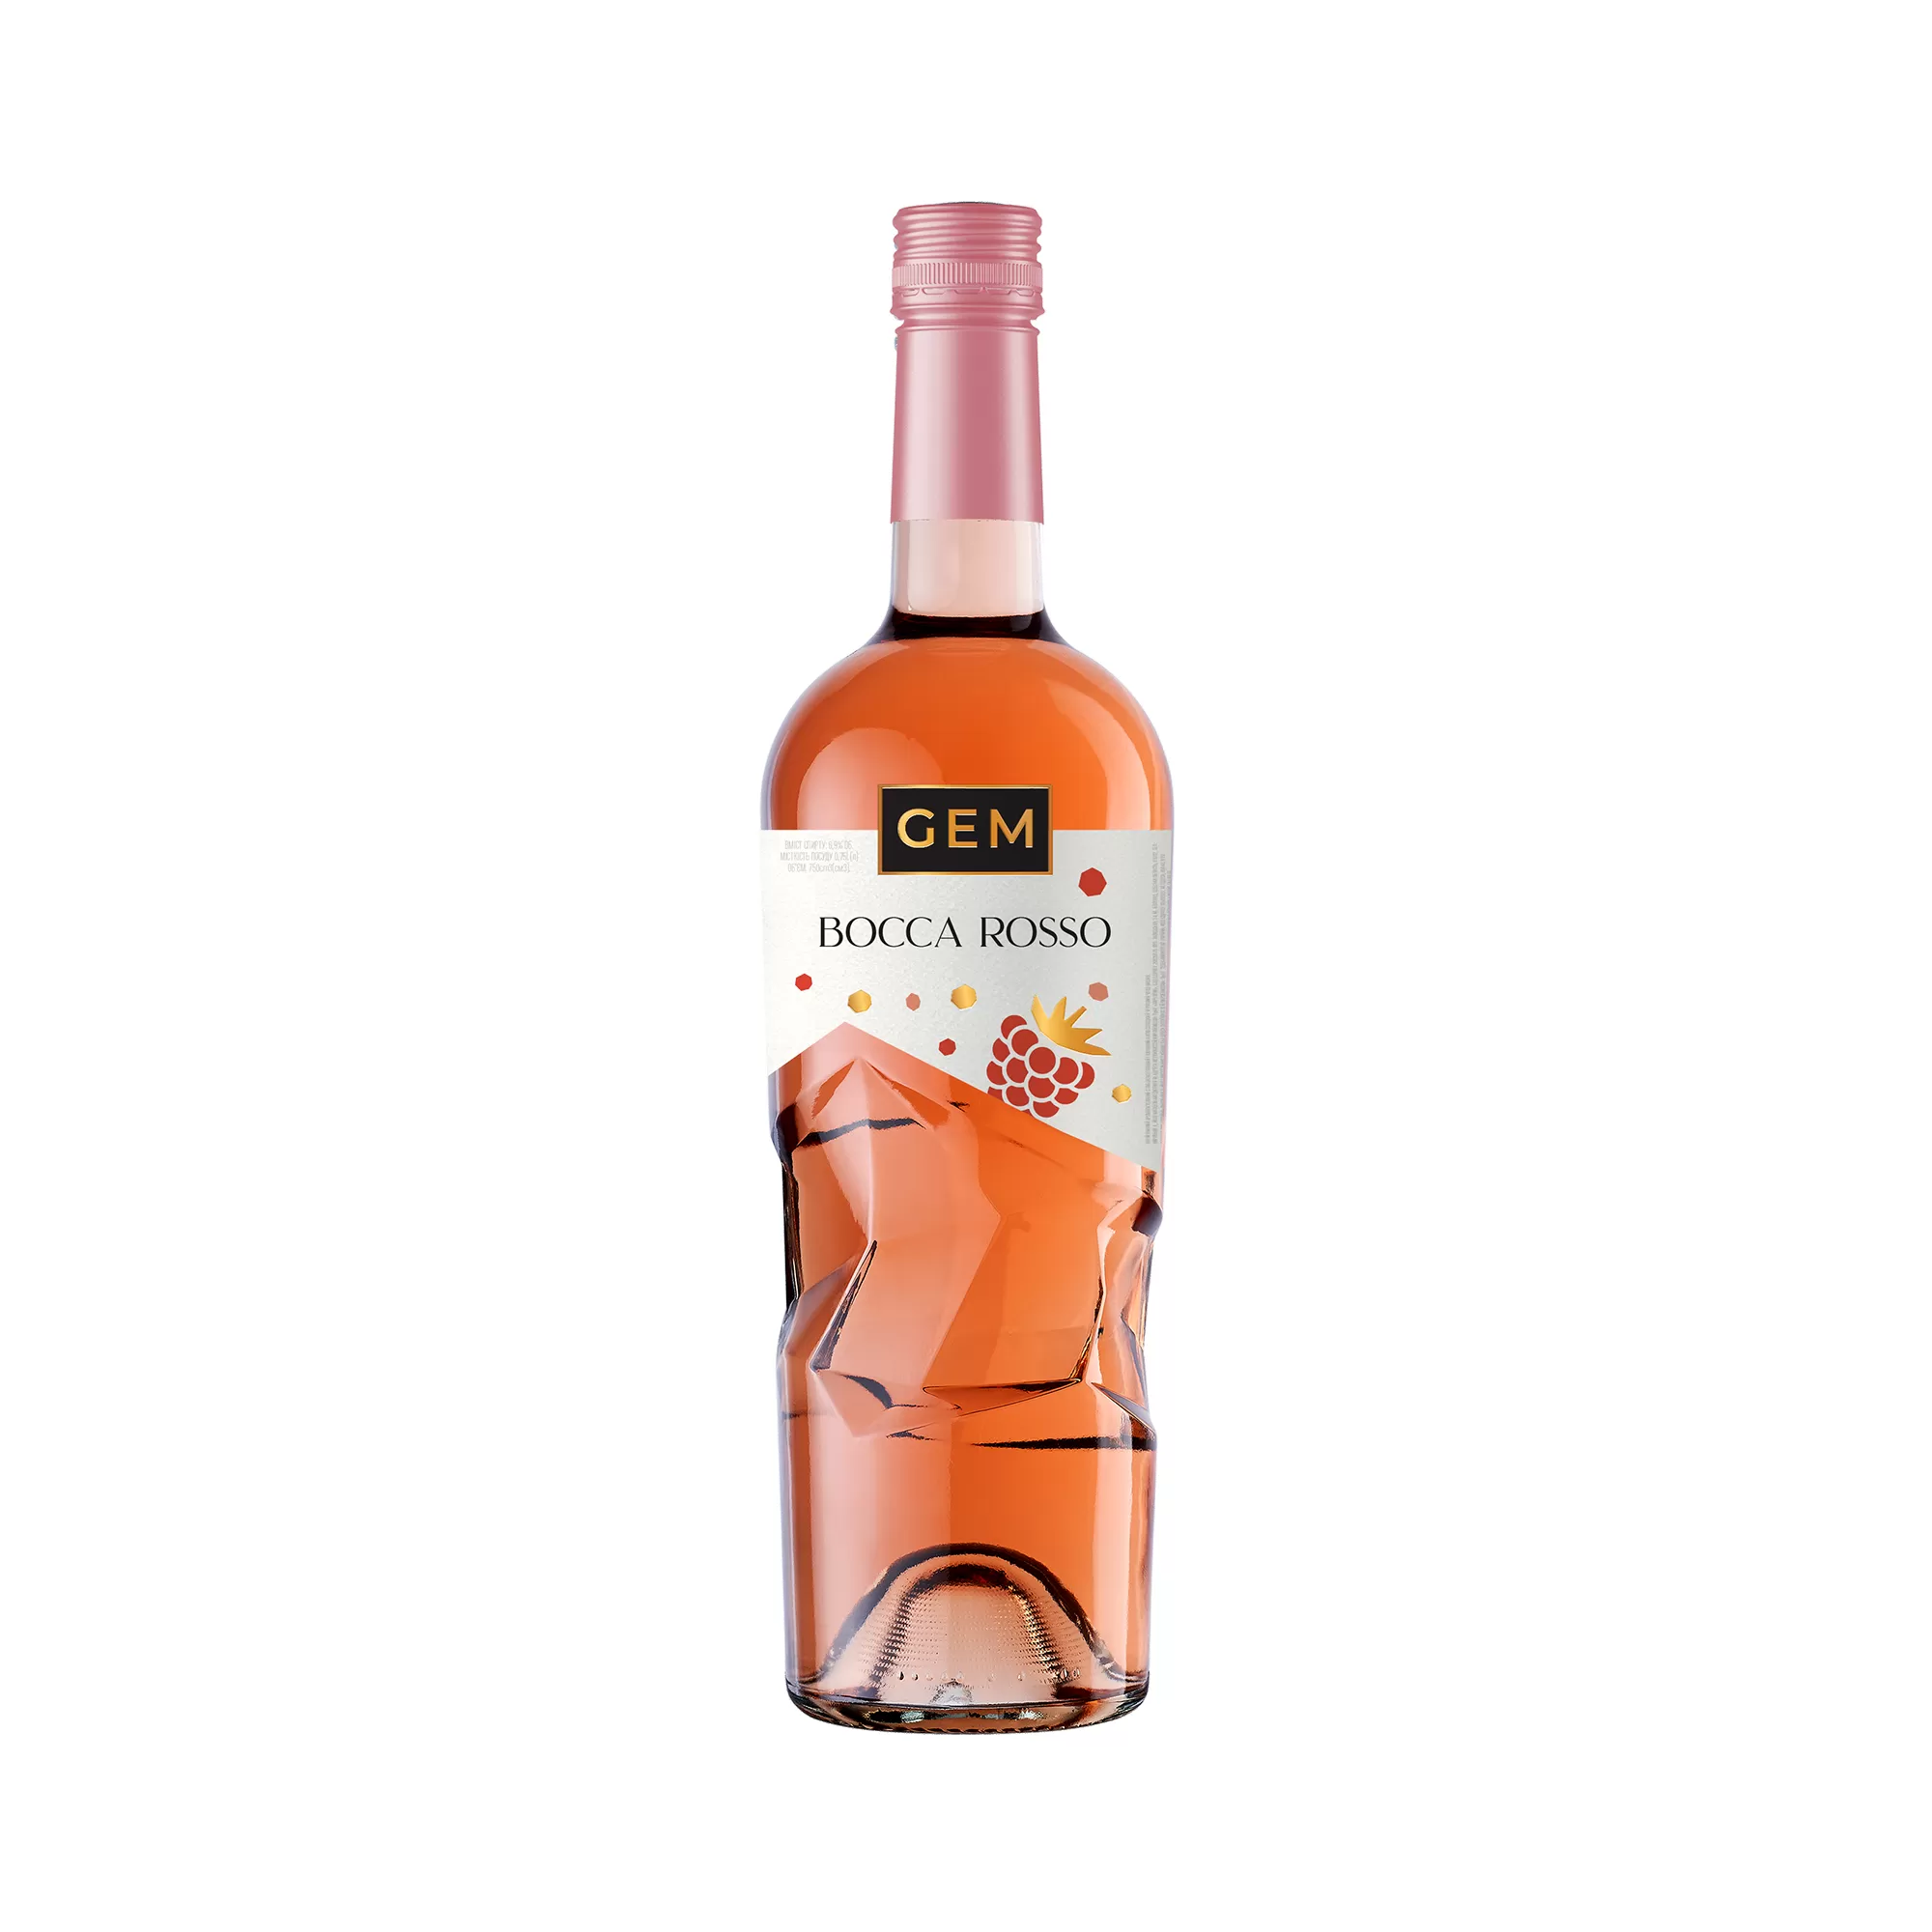 Напиток виноват слабоалк. газированный GEM Bocca Rosso полусладкий розовый (2473) 0,75л 6,9%